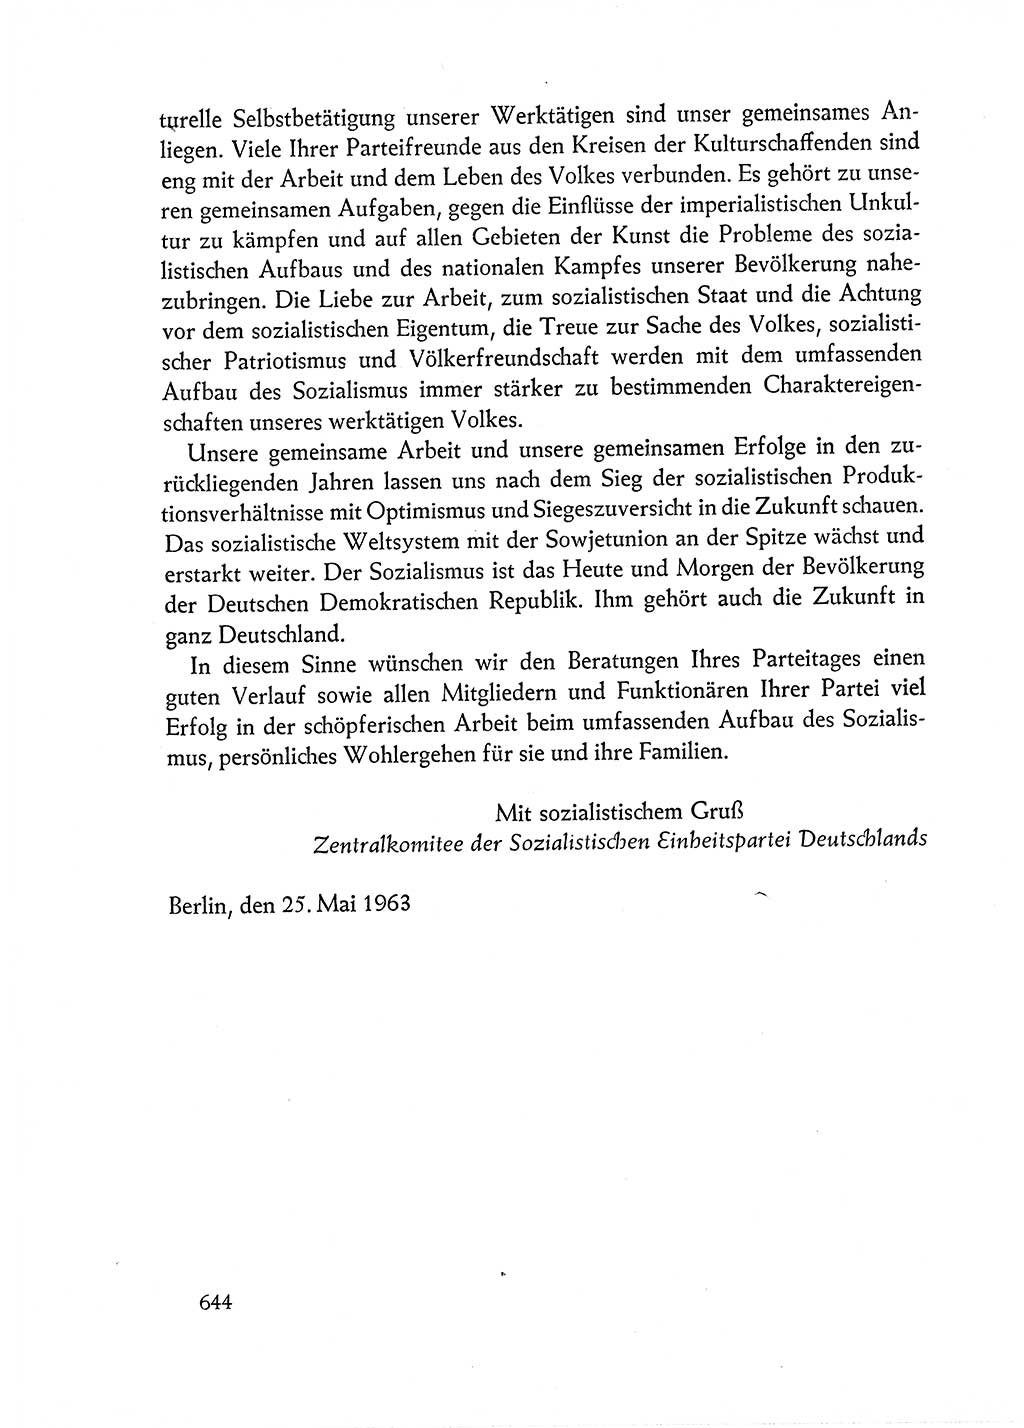 Dokumente der Sozialistischen Einheitspartei Deutschlands (SED) [Deutsche Demokratische Republik (DDR)] 1962-1963, Seite 644 (Dok. SED DDR 1962-1963, S. 644)